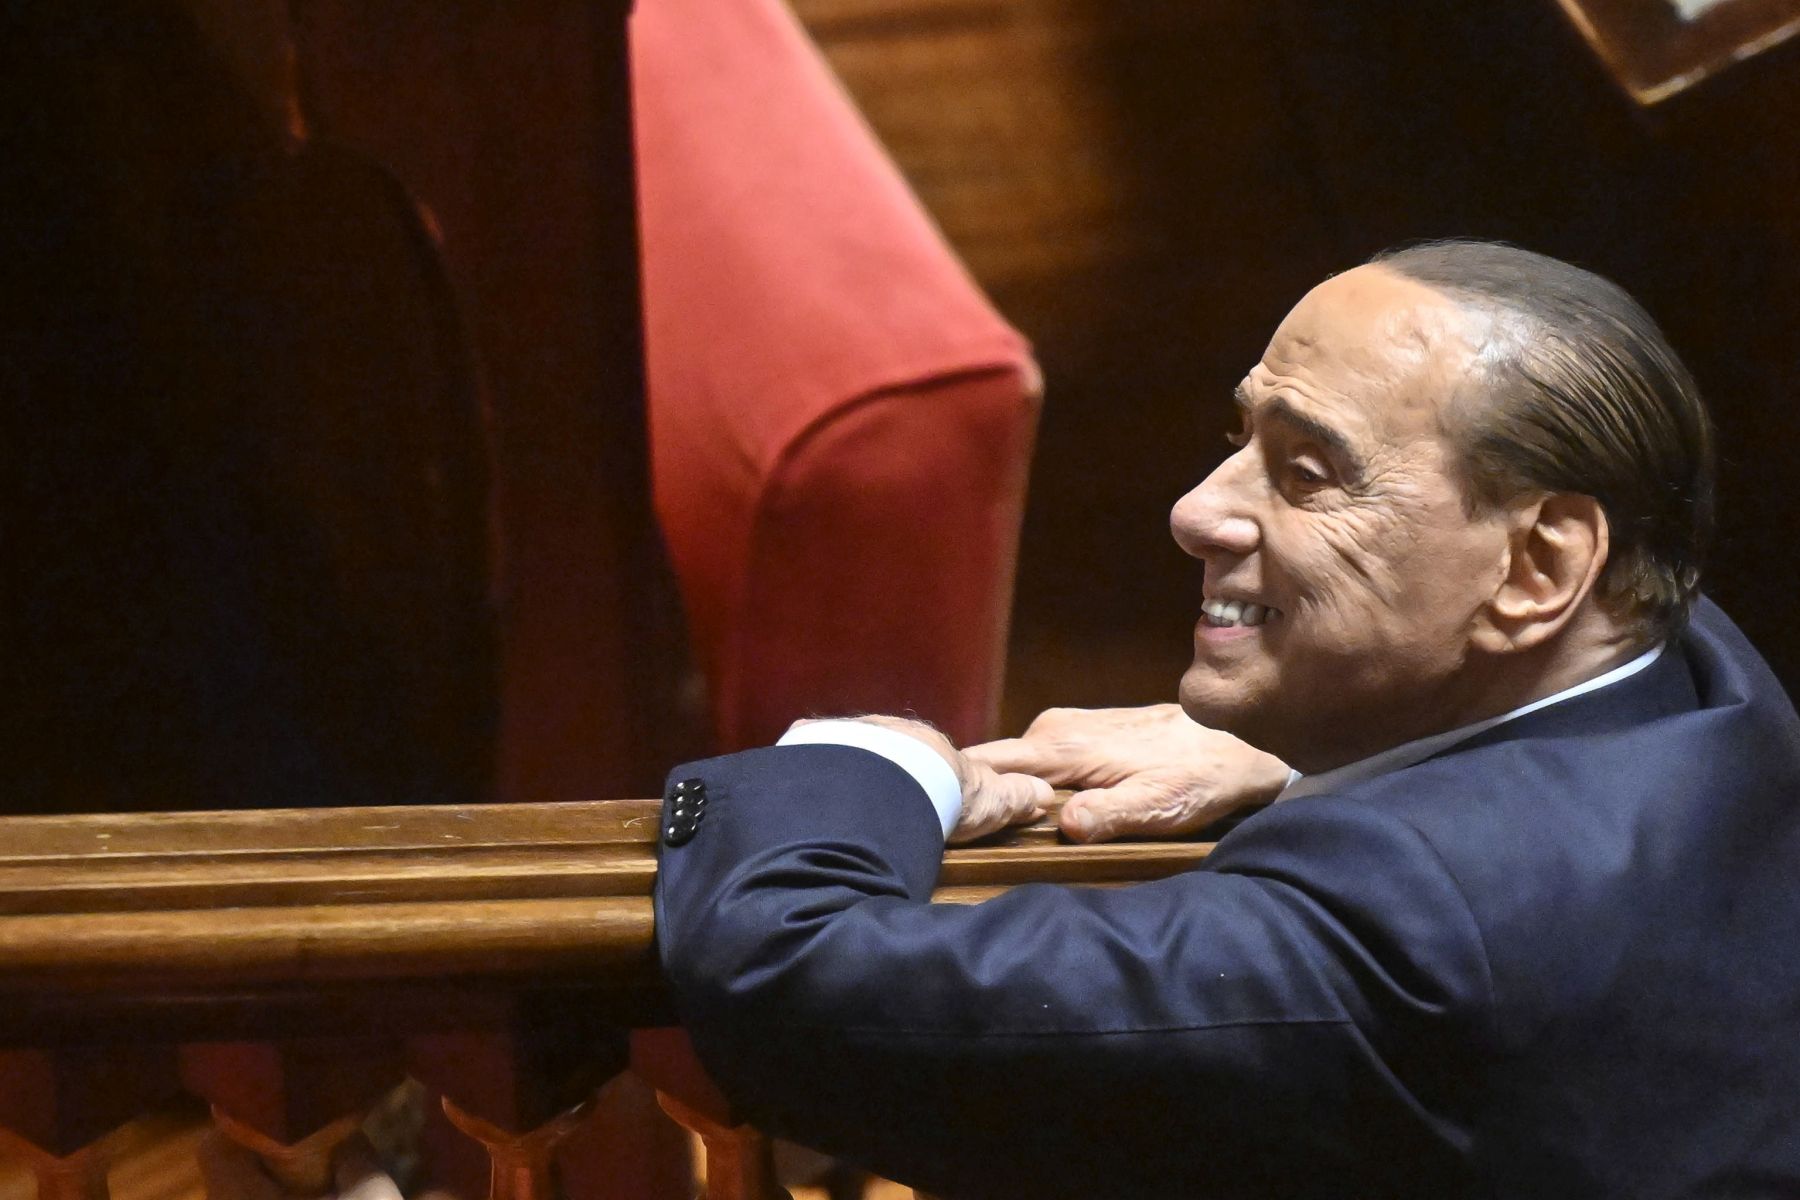 Kórházba került Silvio Berlusconi